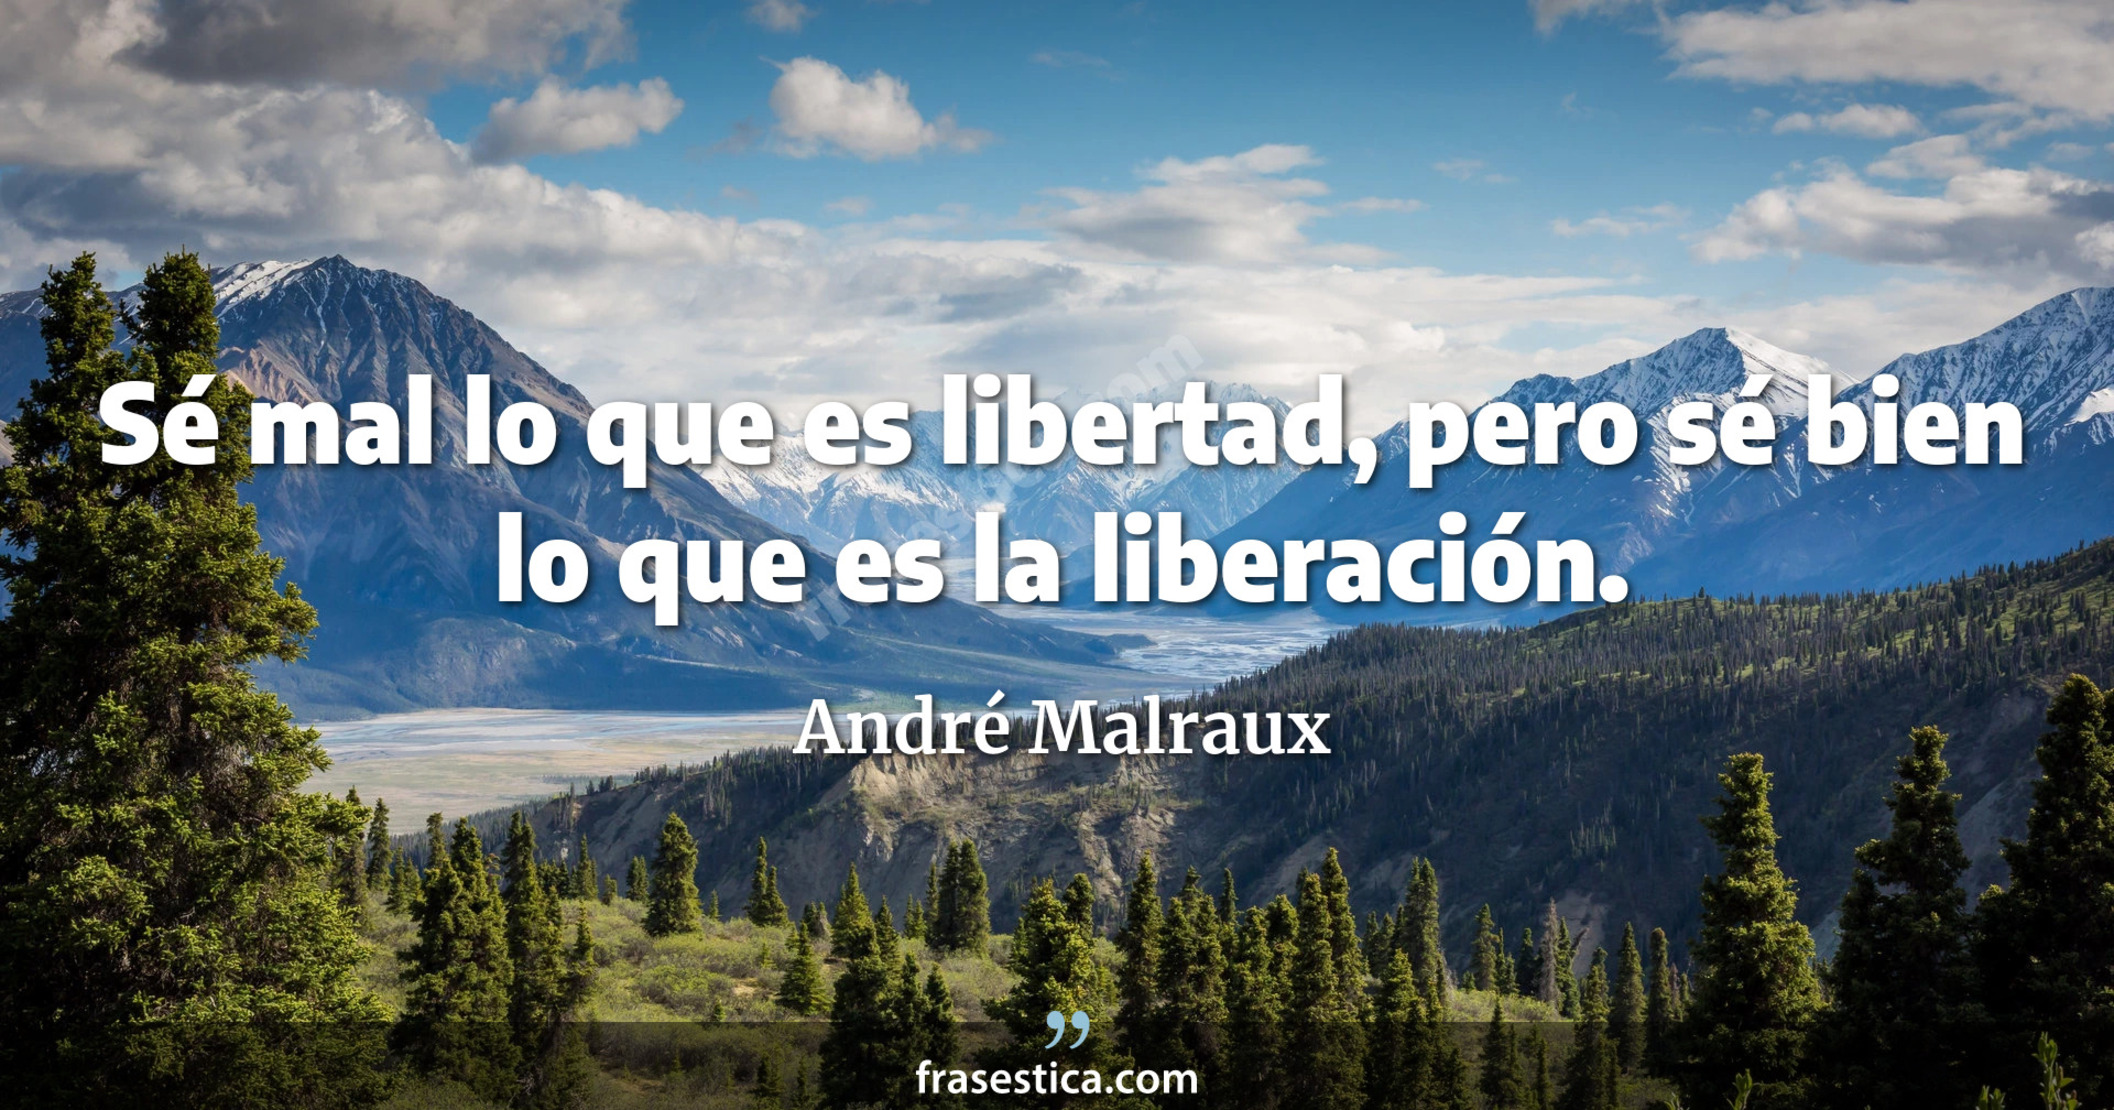 Sé mal lo que es libertad, pero sé bien lo que es la liberación. - André Malraux